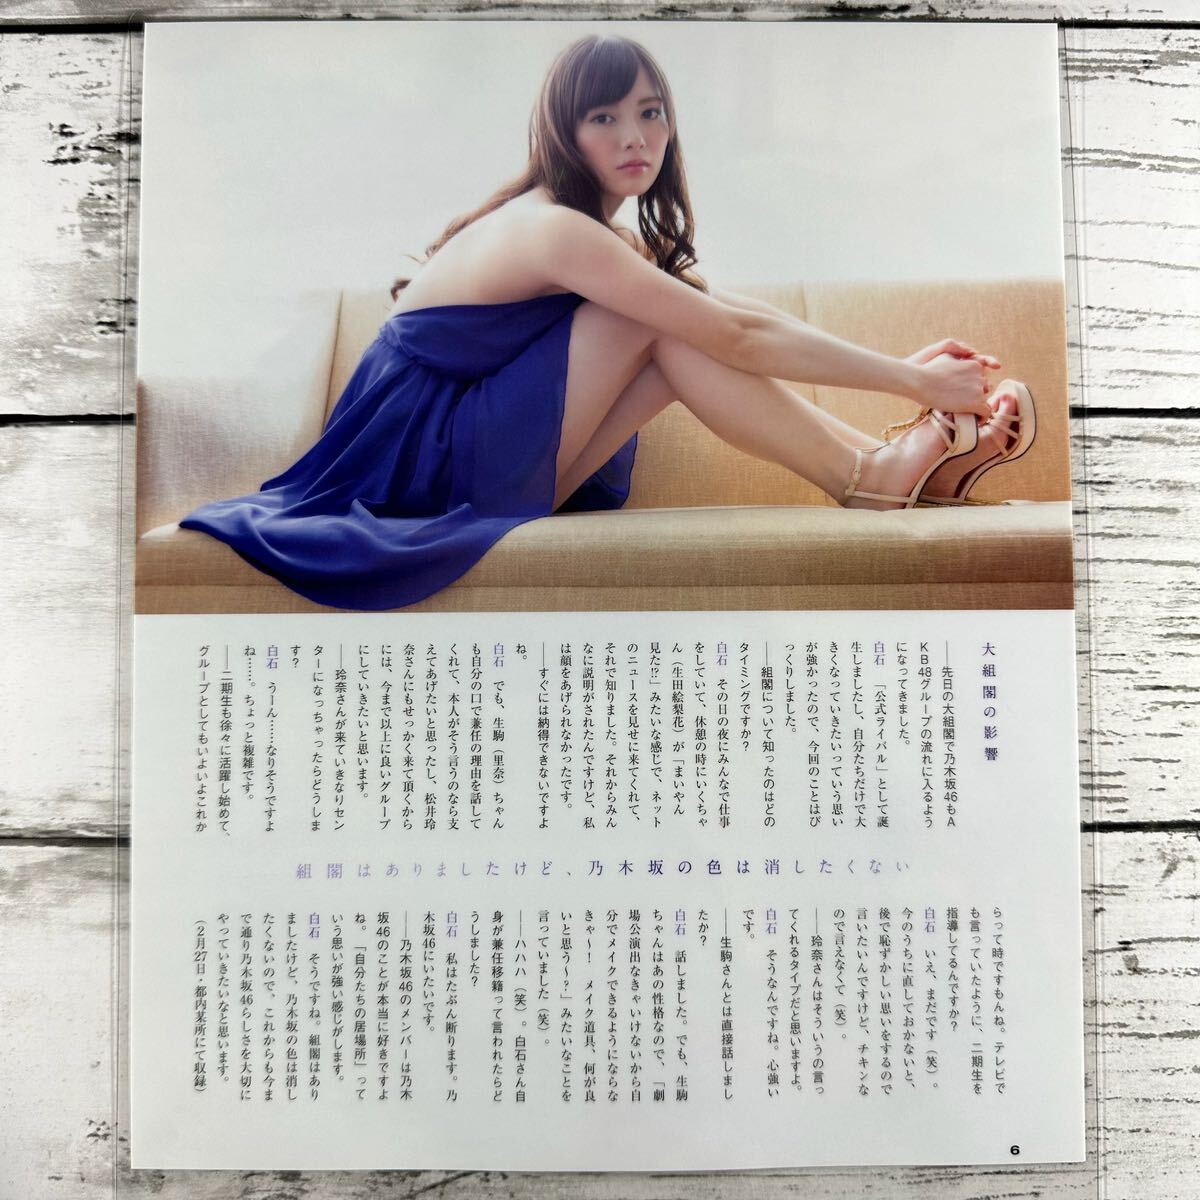 [ высокое качество ламинирование отделка ][ белый камень лен . Nogizaka 46 ] BUBKA 2014 год 5 месяц журнал вырезки 10P A4 плёнка купальный костюм bikini model актер женщина super 